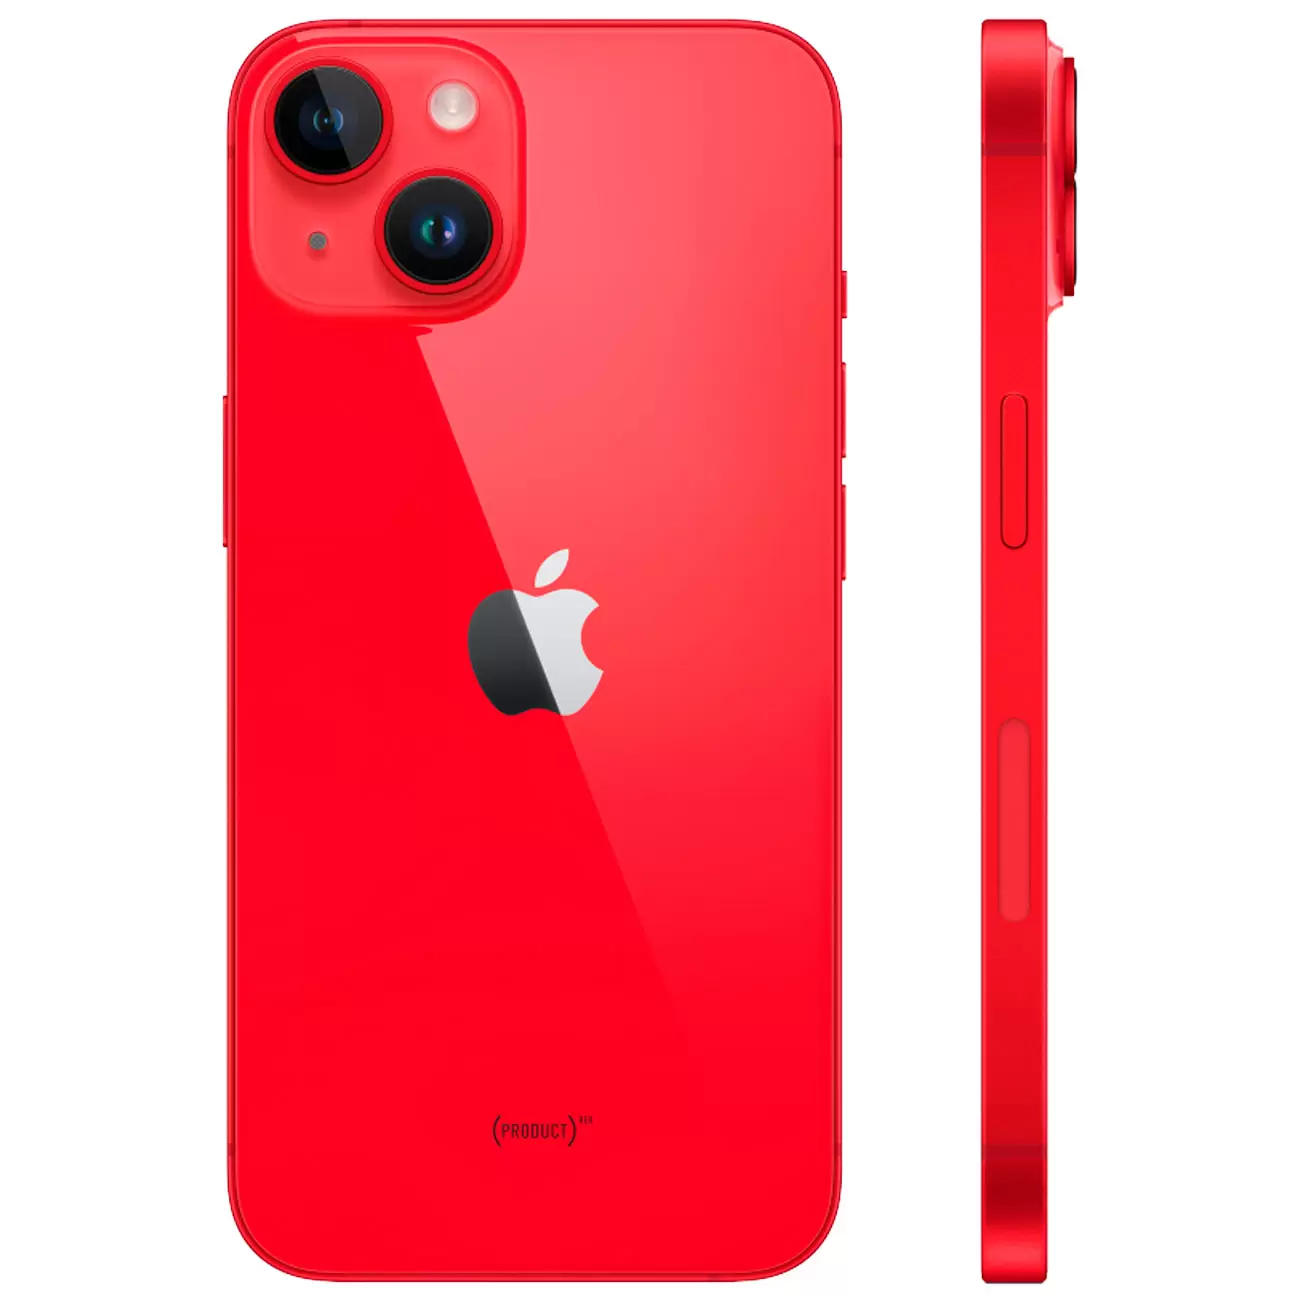 Купить смартфон apple iphone 14 256gb (product)red Apple iPhone 14 в официальном магазине Apple, Samsung, Xiaomi. iPixel.ru Купить, заказ, кредит, рассрочка, отзывы,  характеристики, цена,  фотографии, в подарок.